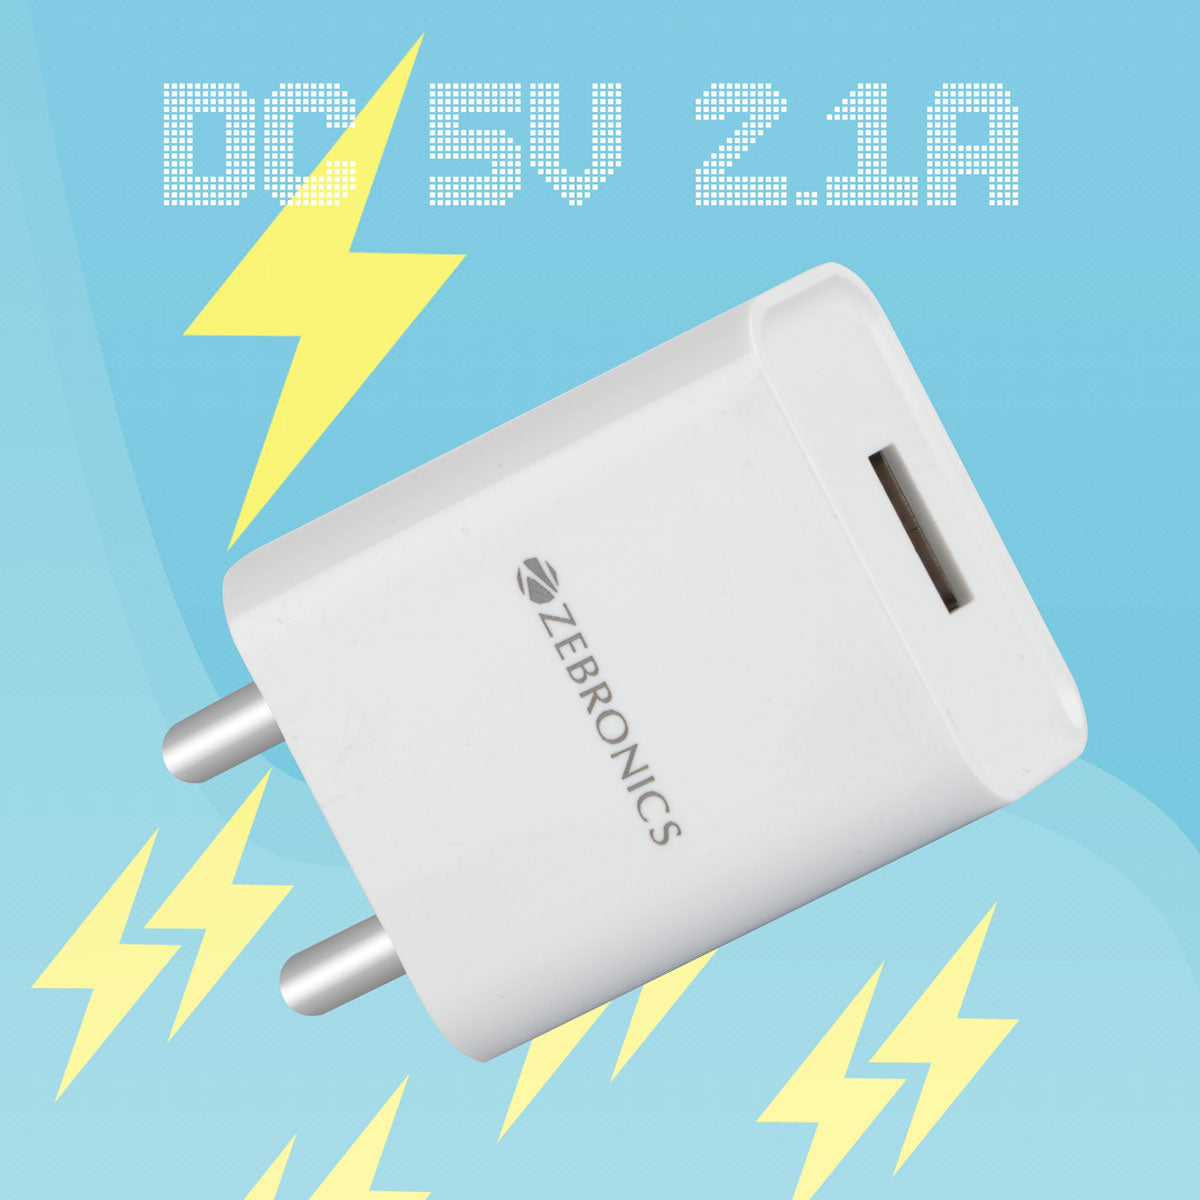 Zeb-MA5211A -  Mobile USB Adapter - Zebronics